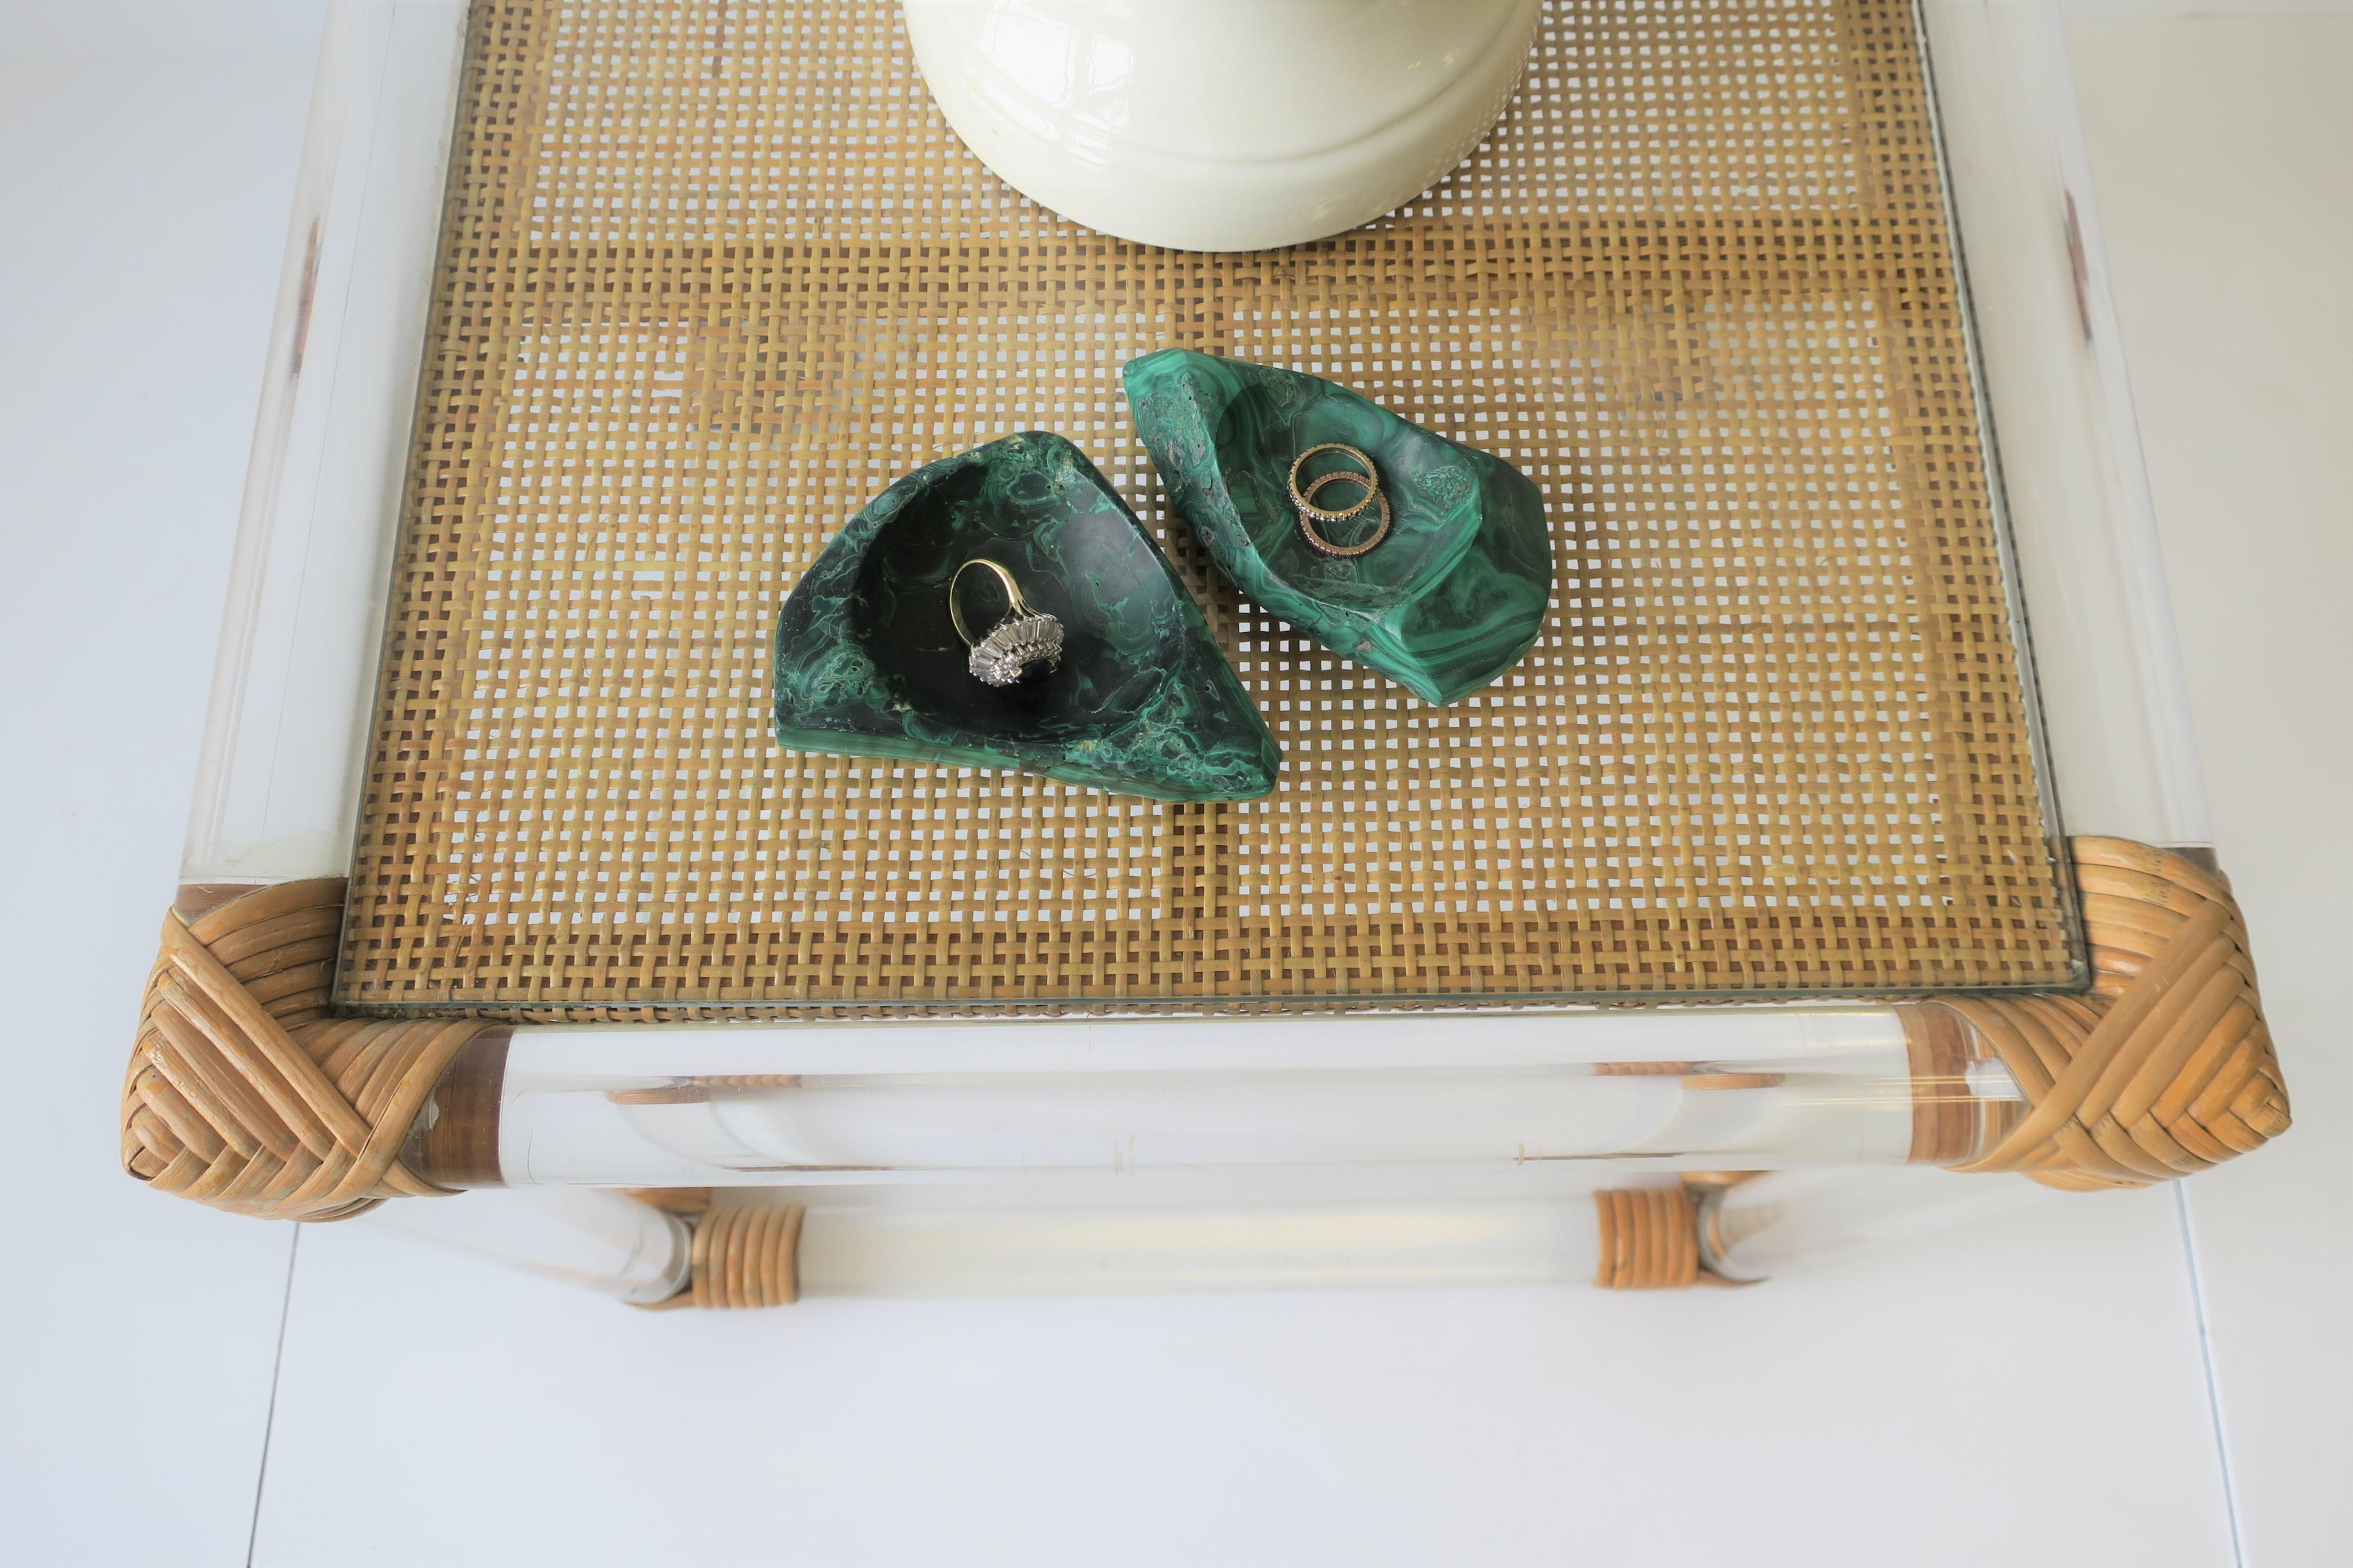 Green Malachite Desk Vessel or Jewelry Dish 13